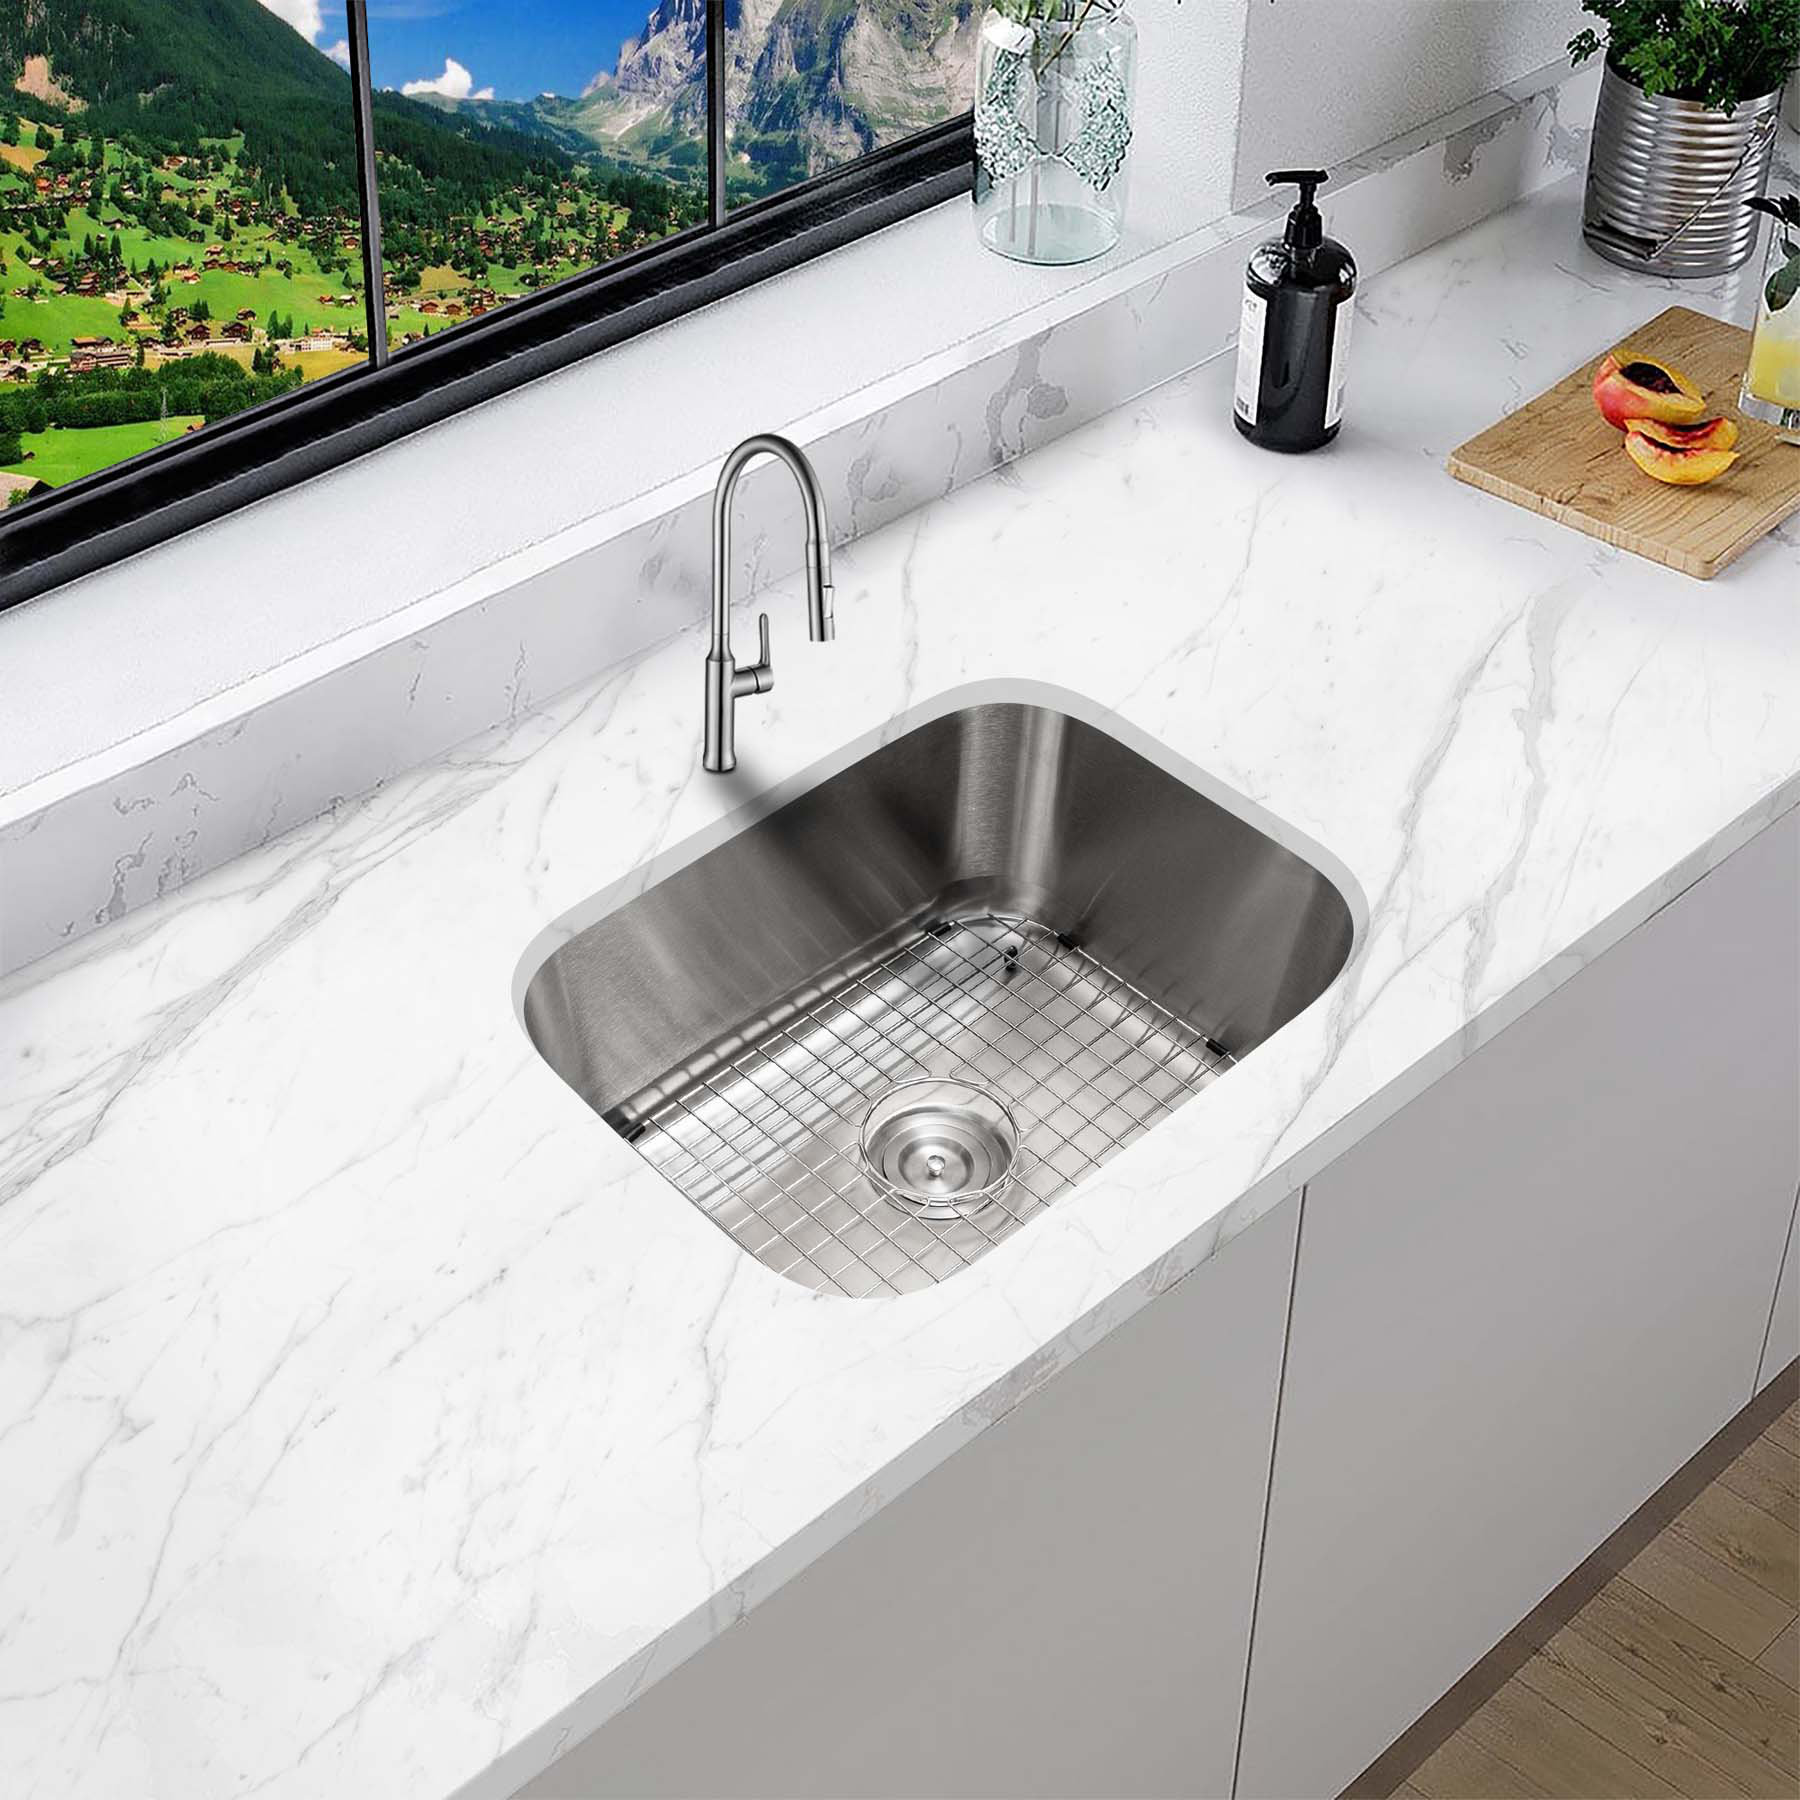 https://assets.wfcdn.com/im/05657066/compr-r85/2216/221680289/23-l-x-18-w-undermount-kitchen-sink-with-strainer-and-bottom-sink-grid.jpg